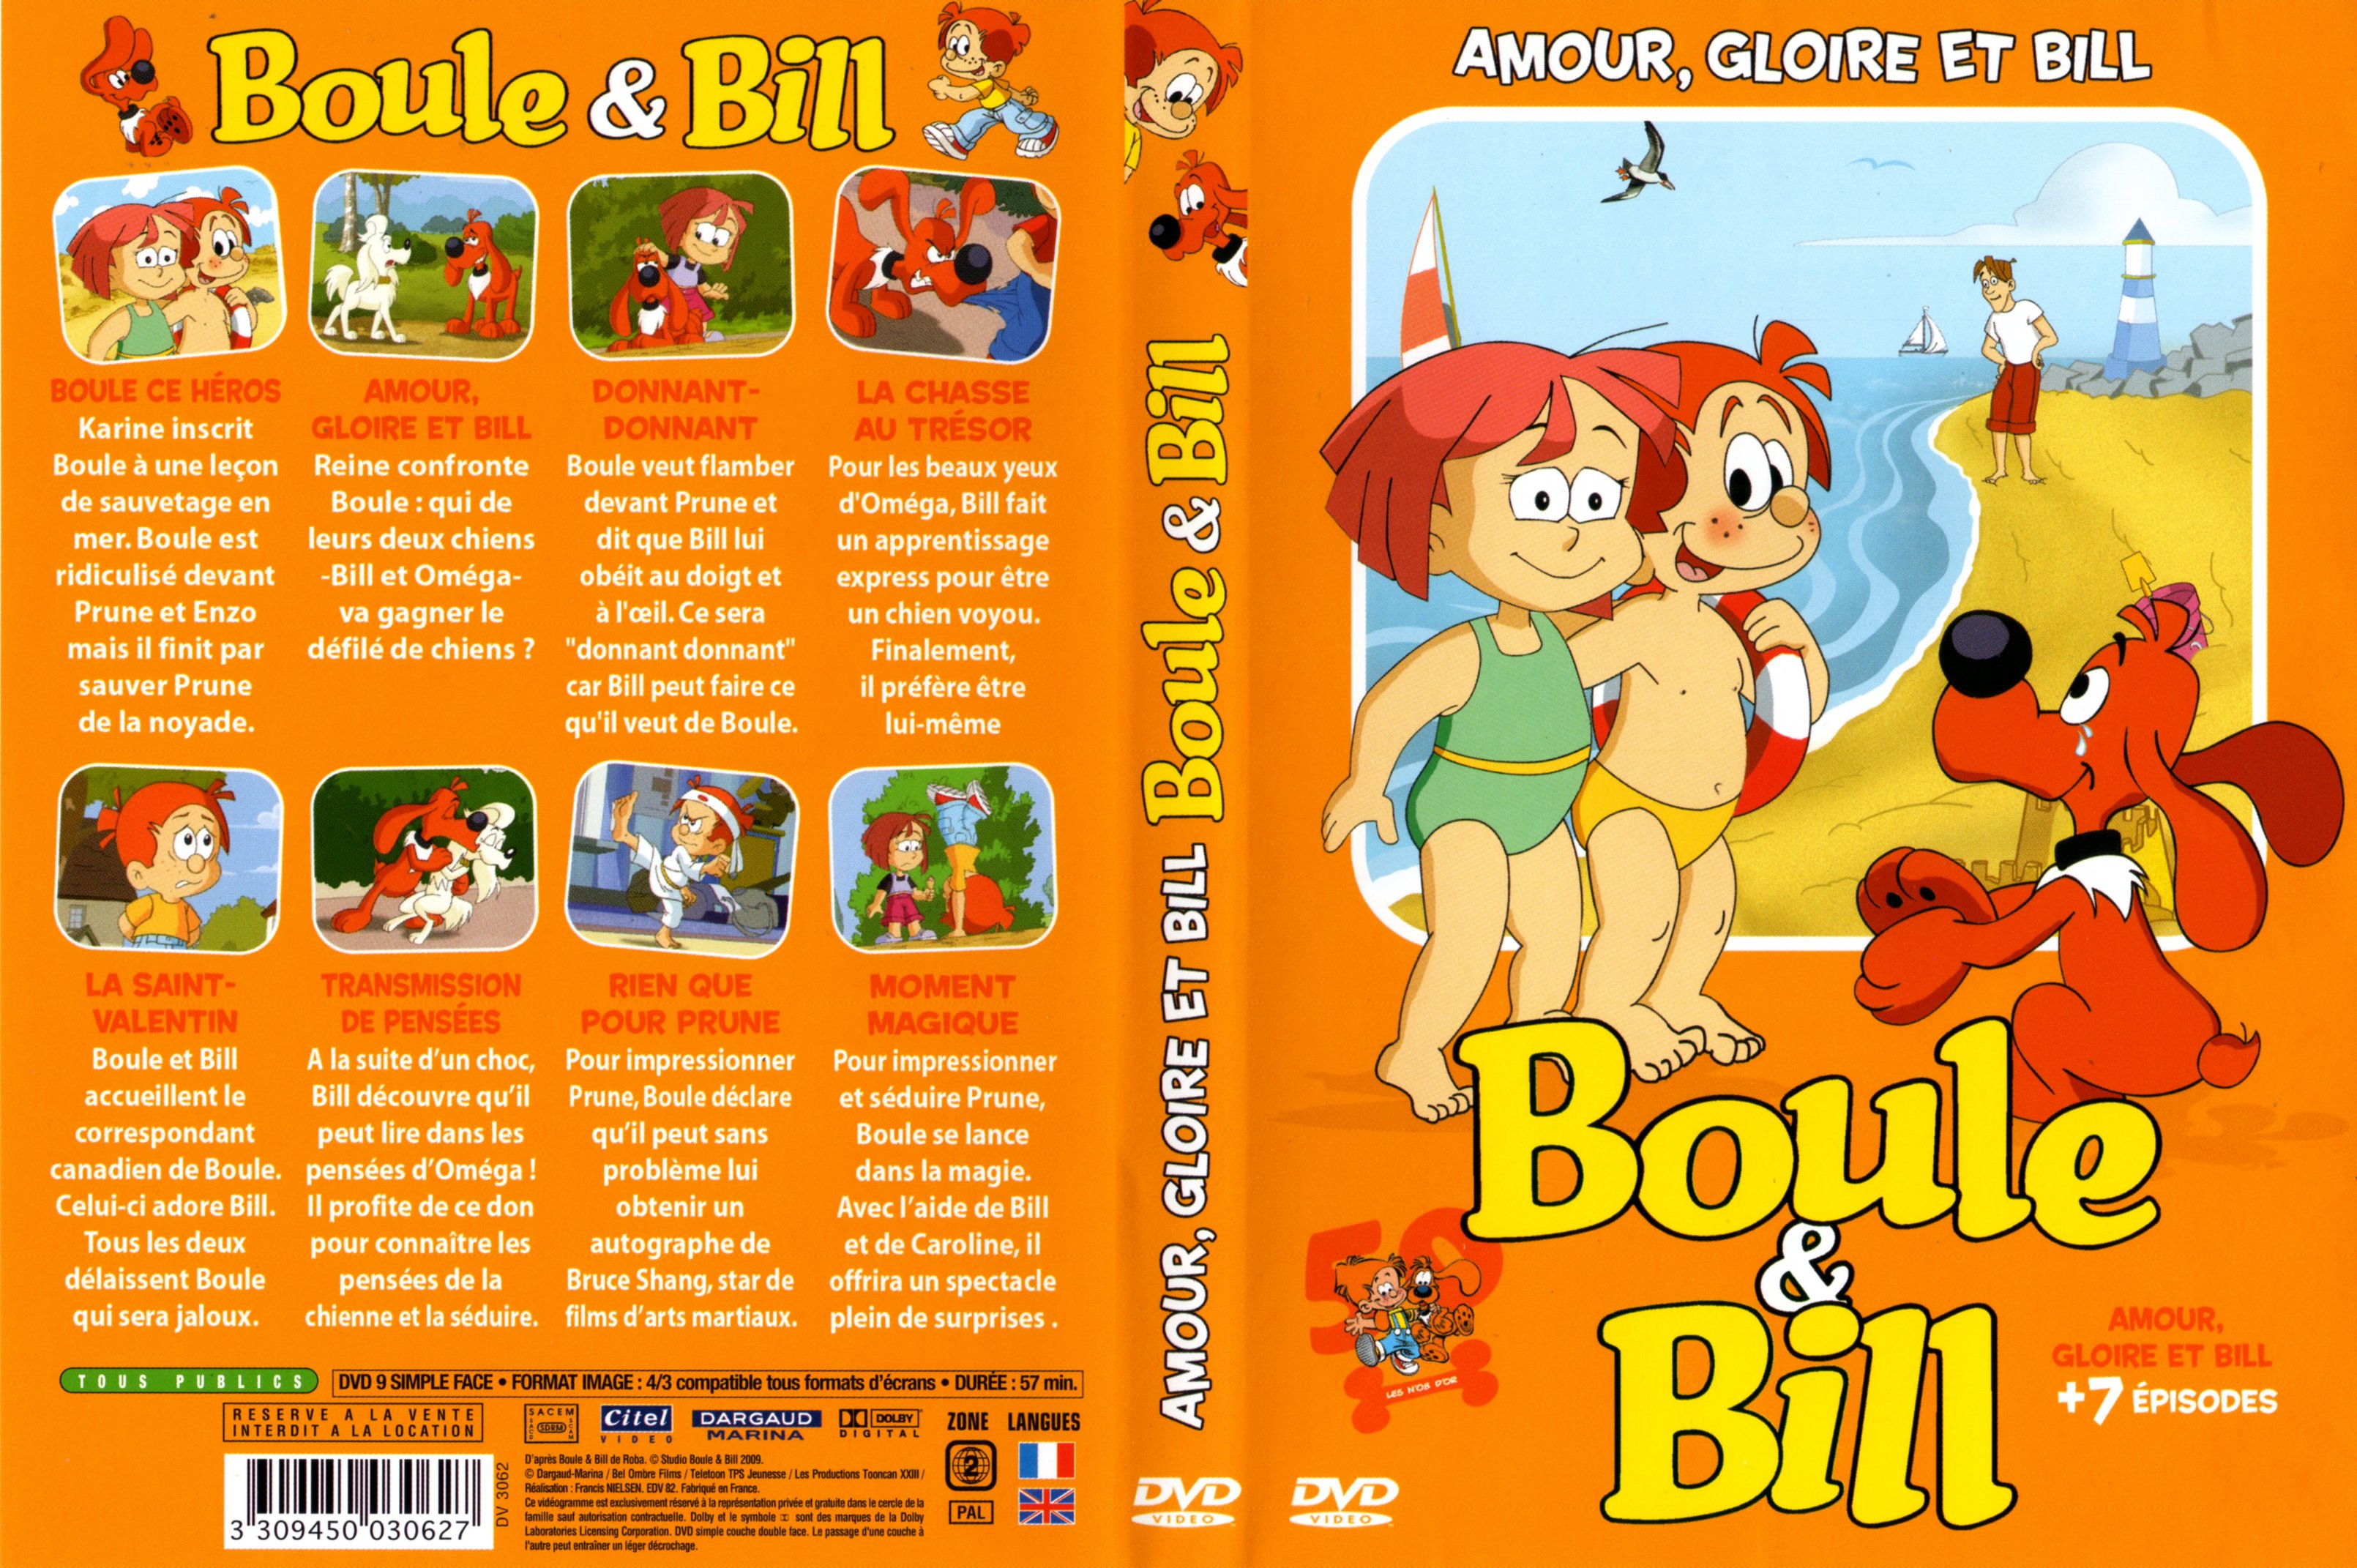 Jaquette DVD Boule et Bill - Amour gloire et Bill